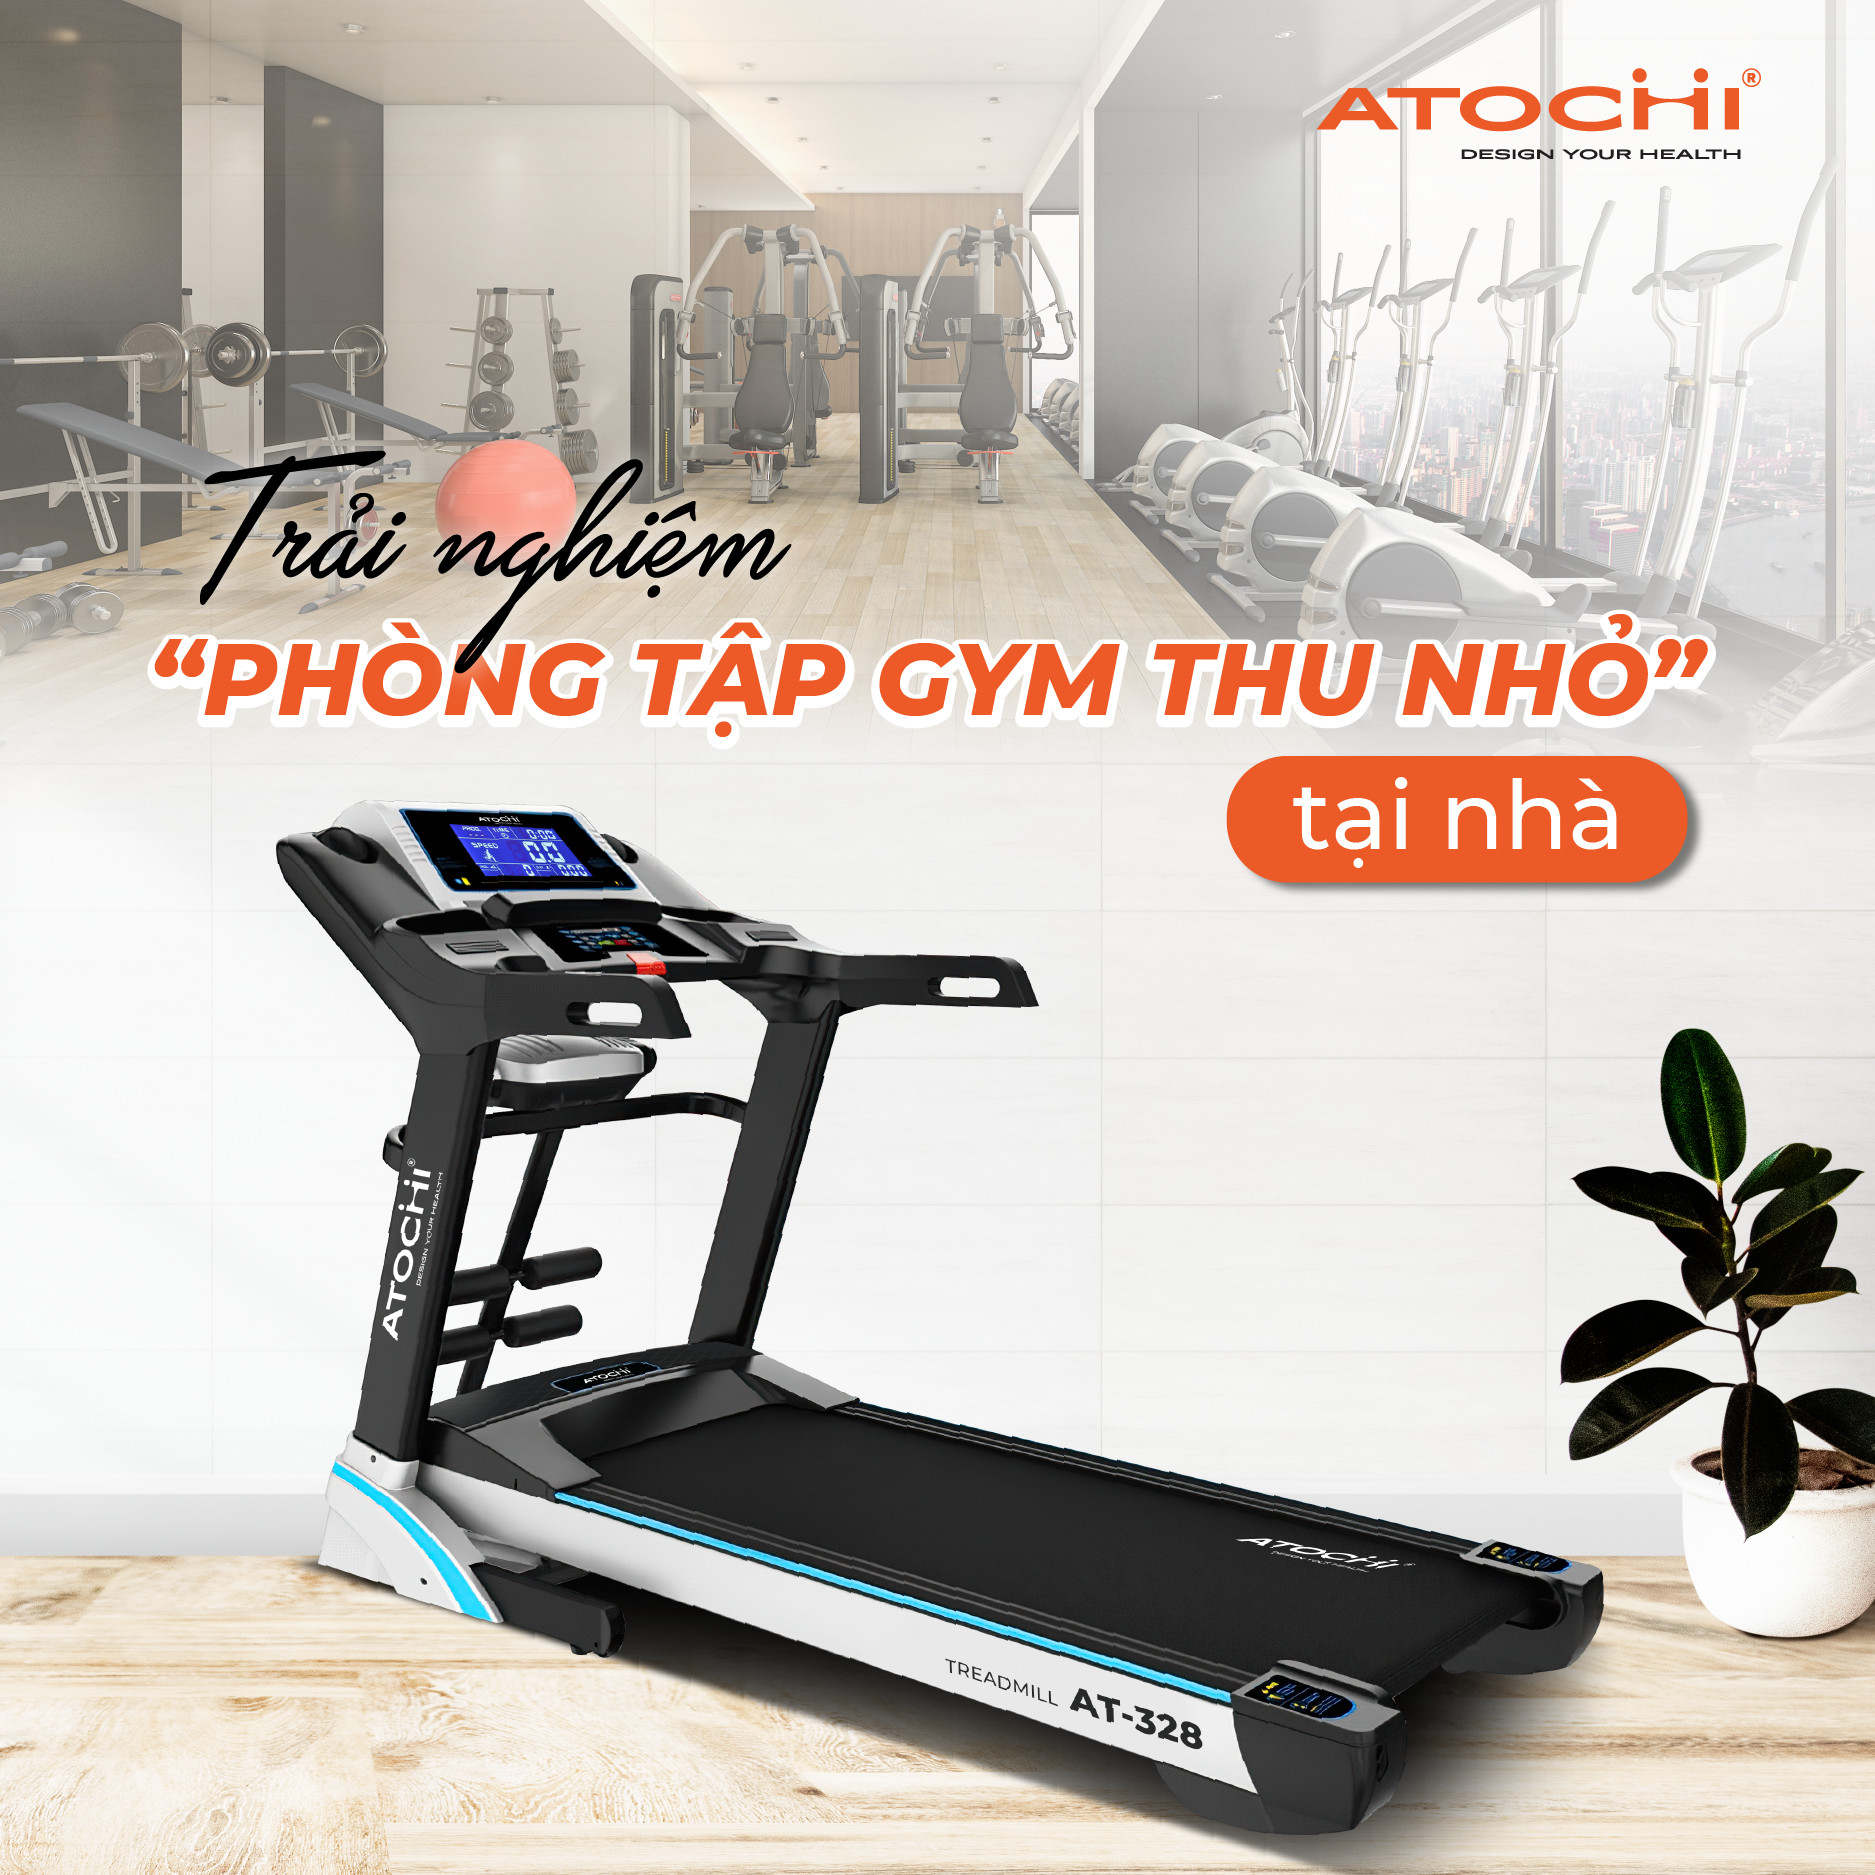 Atochi - thương hiệu máy chạy bộ được tin dùng tại Việt Nam